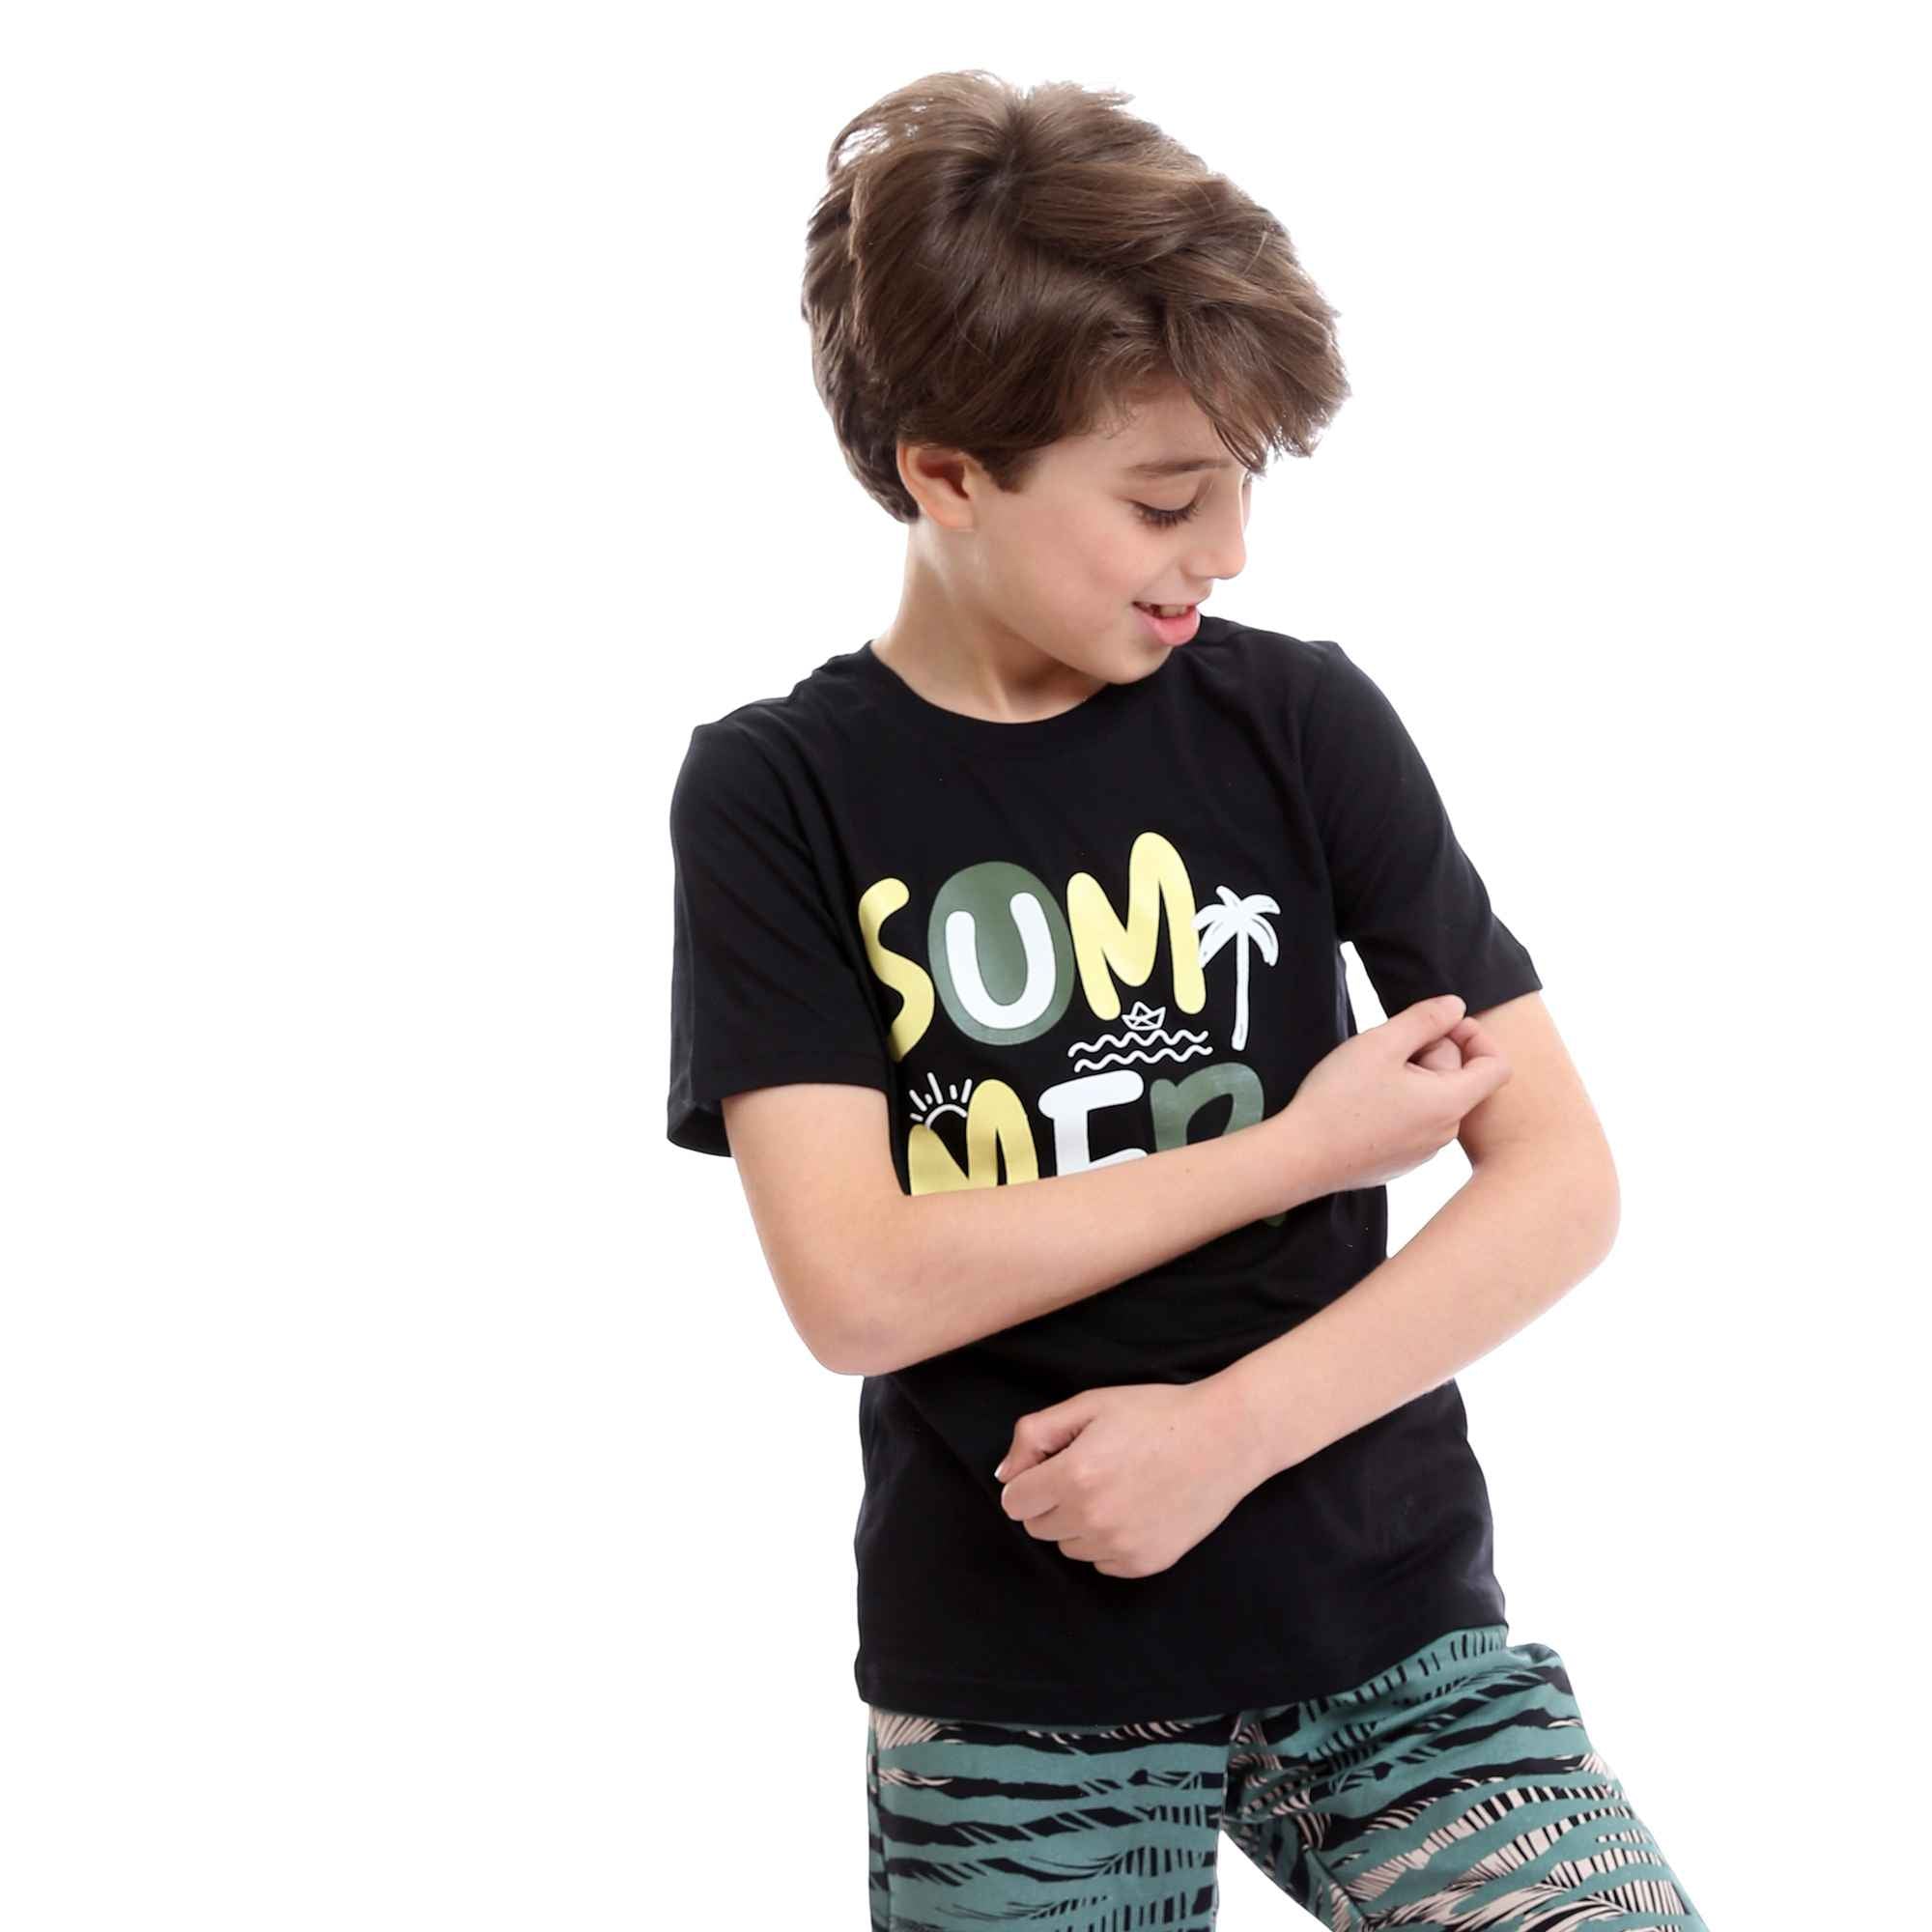 Boys Printed Colorful Summer & Shorts Pajama Set - Black & Mint Green